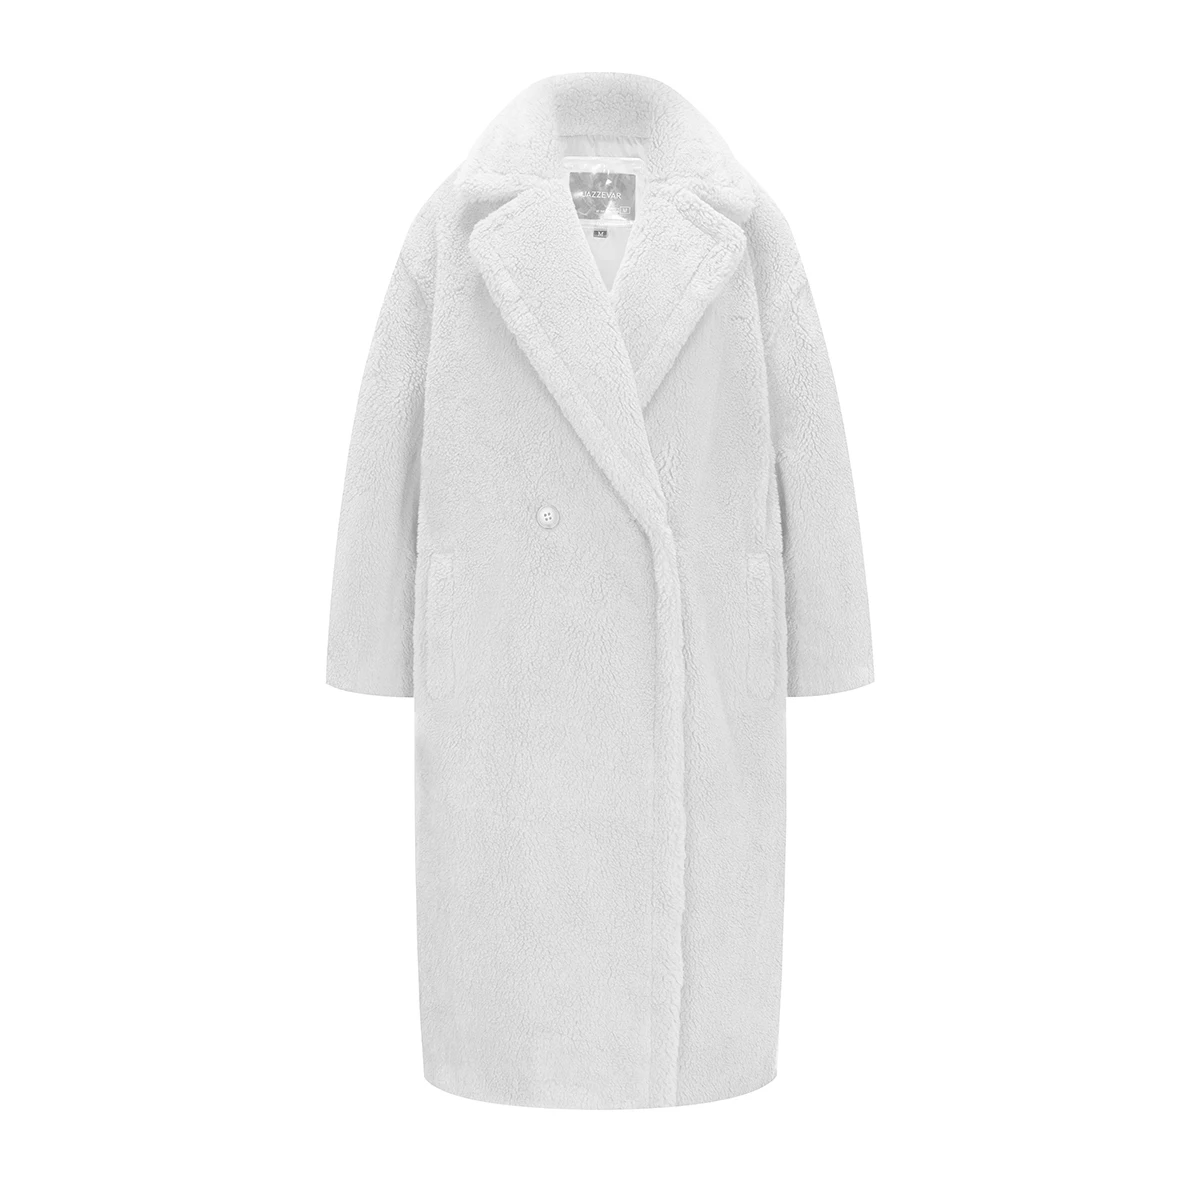 JAZZEVAR Зимнее новое поступление меховое пальто новое модное стильное свободная одежда длинное теплое зимная куртка K9063 - Цвет: whiteDKL07